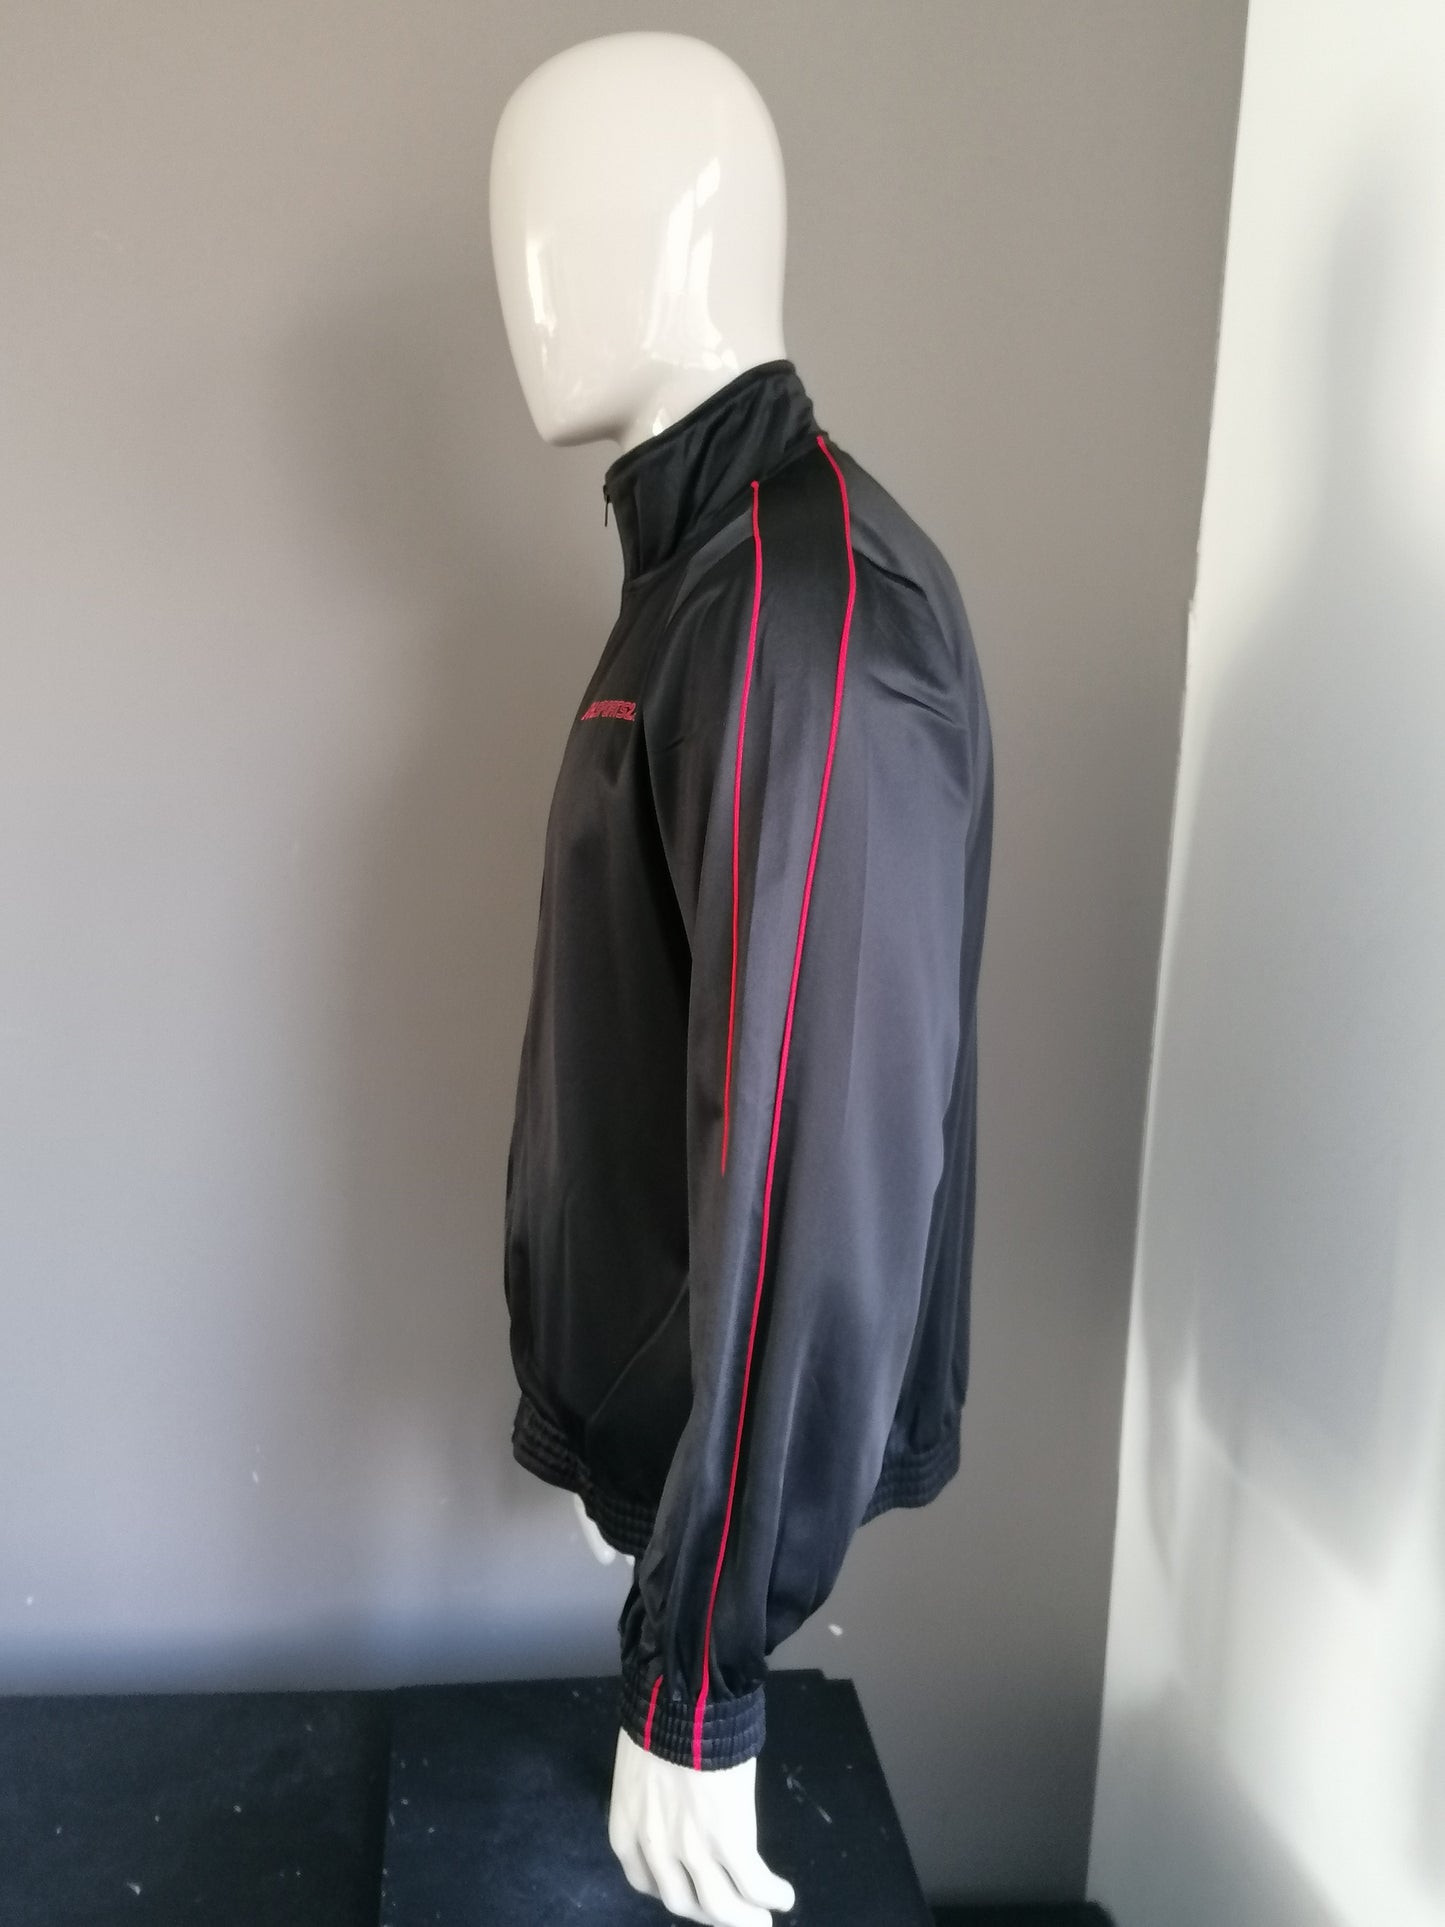 Upstairs sport Trainingsjack. Zwart Rood gekleurd. Maat L.